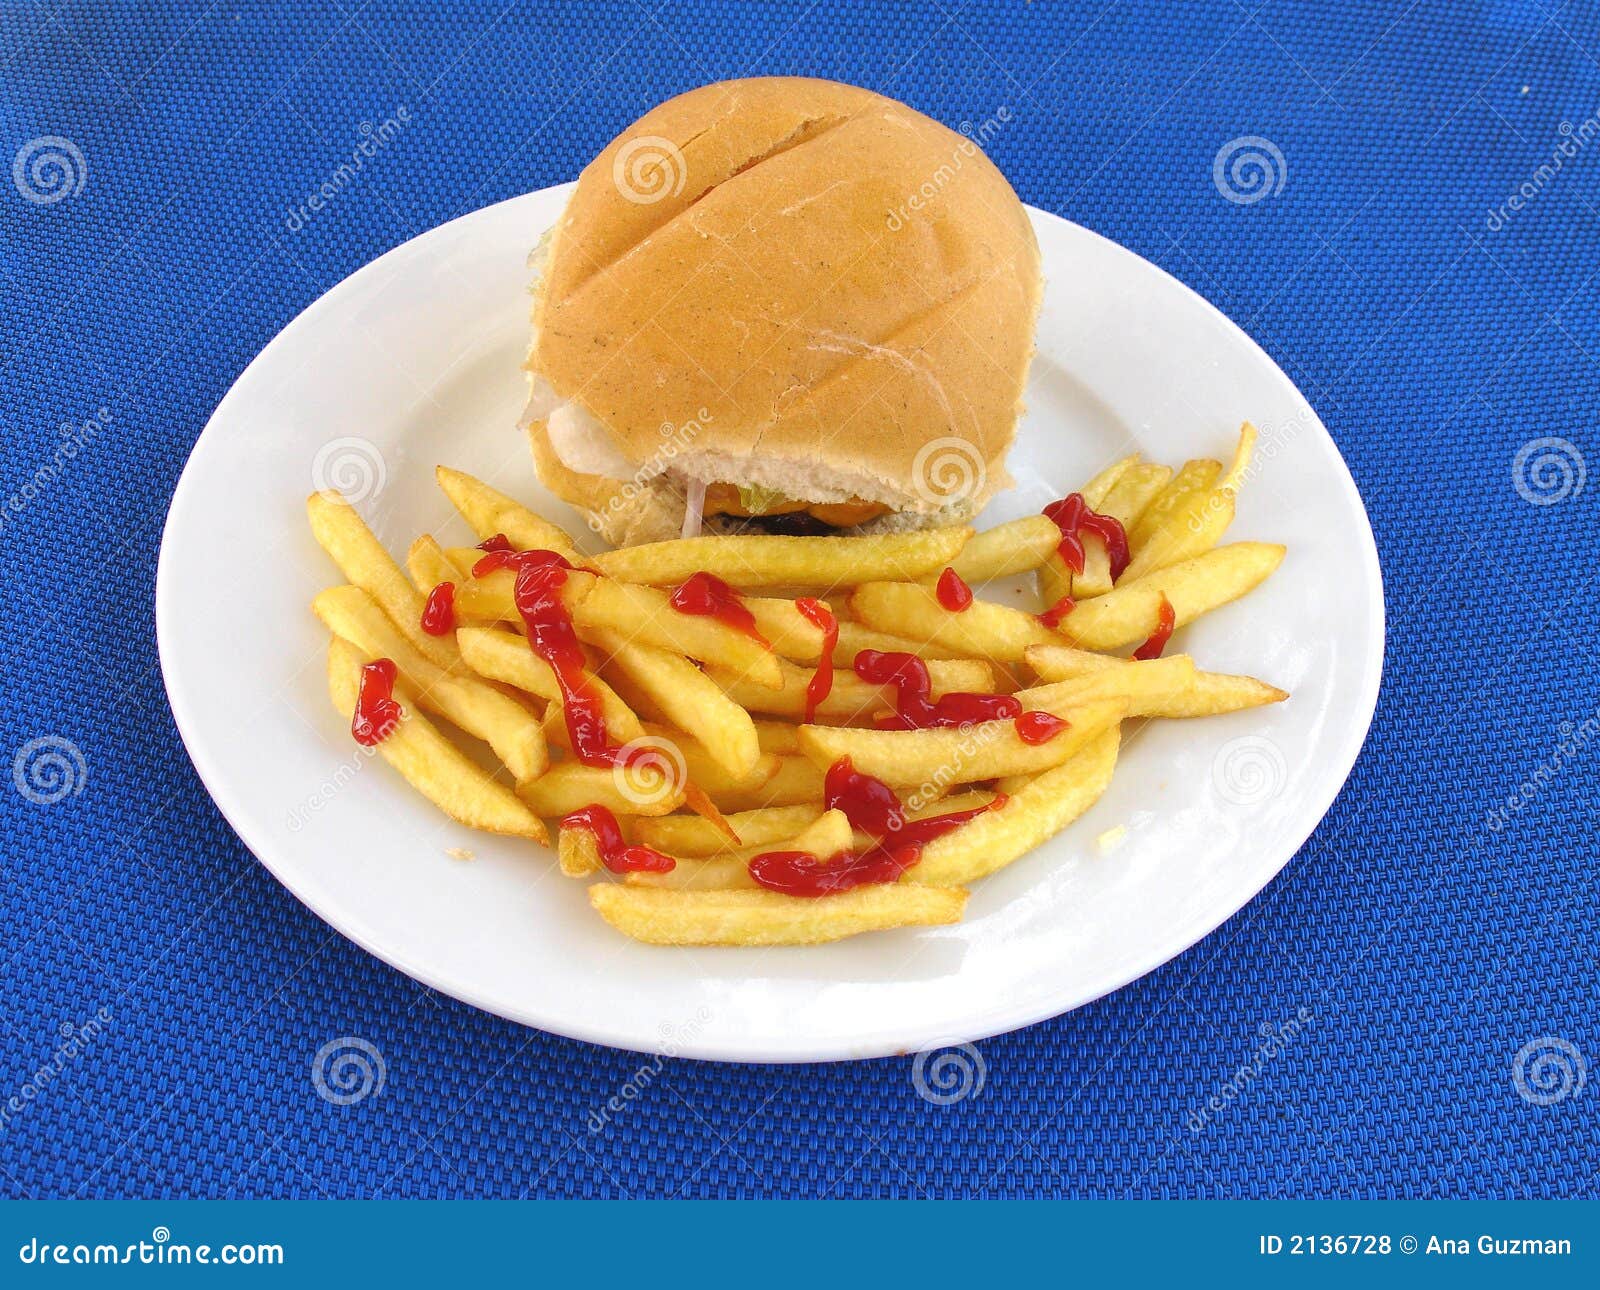 Um Hamburger com fritadas sobre um fundo azul